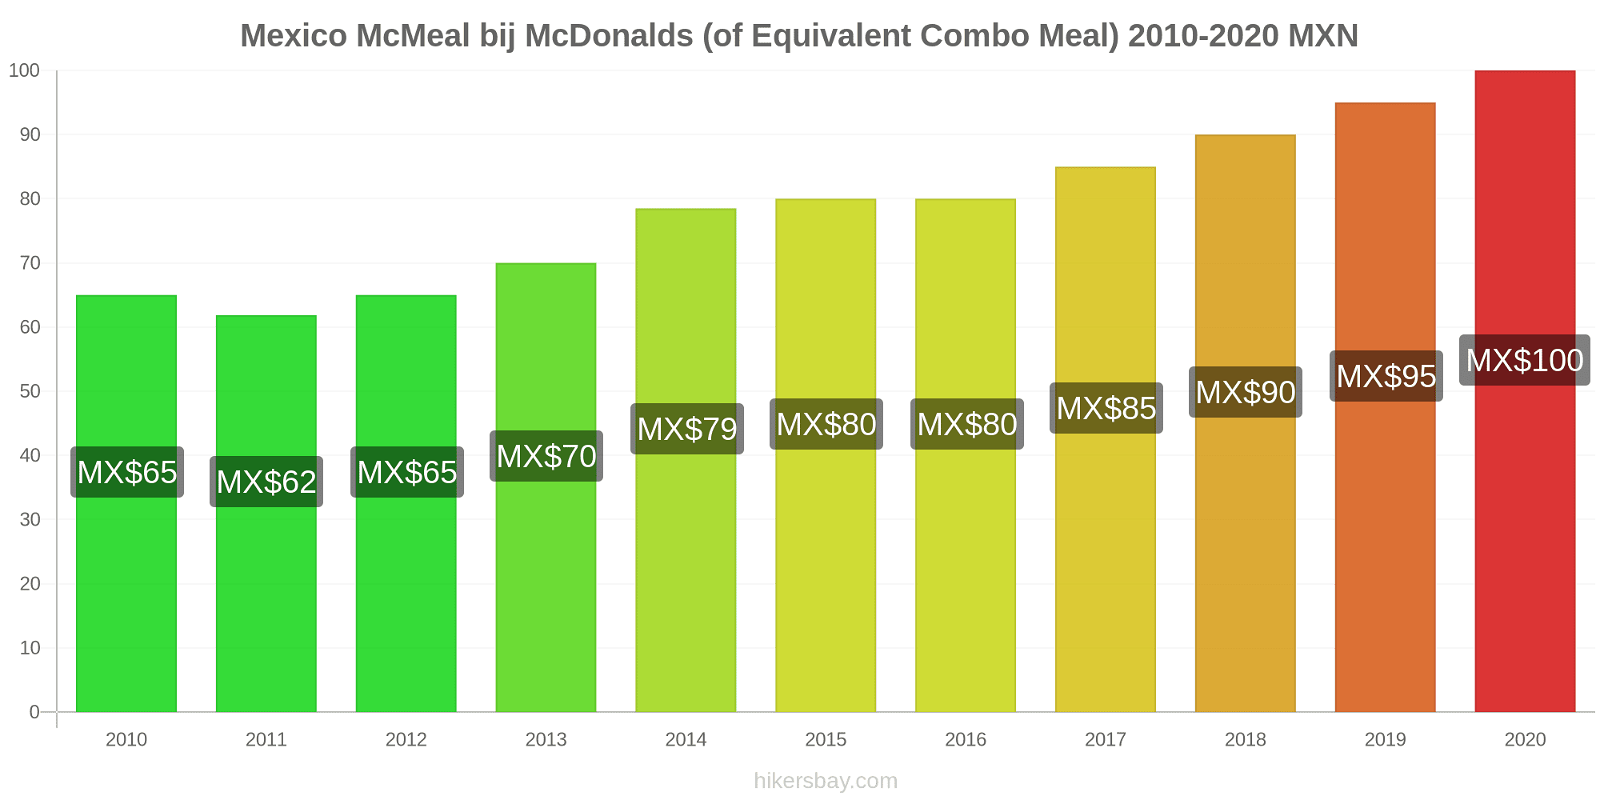 Mexico prijswijzigingen McMeal bij McDonalds (of gelijkwaardige Combo maaltijd) hikersbay.com